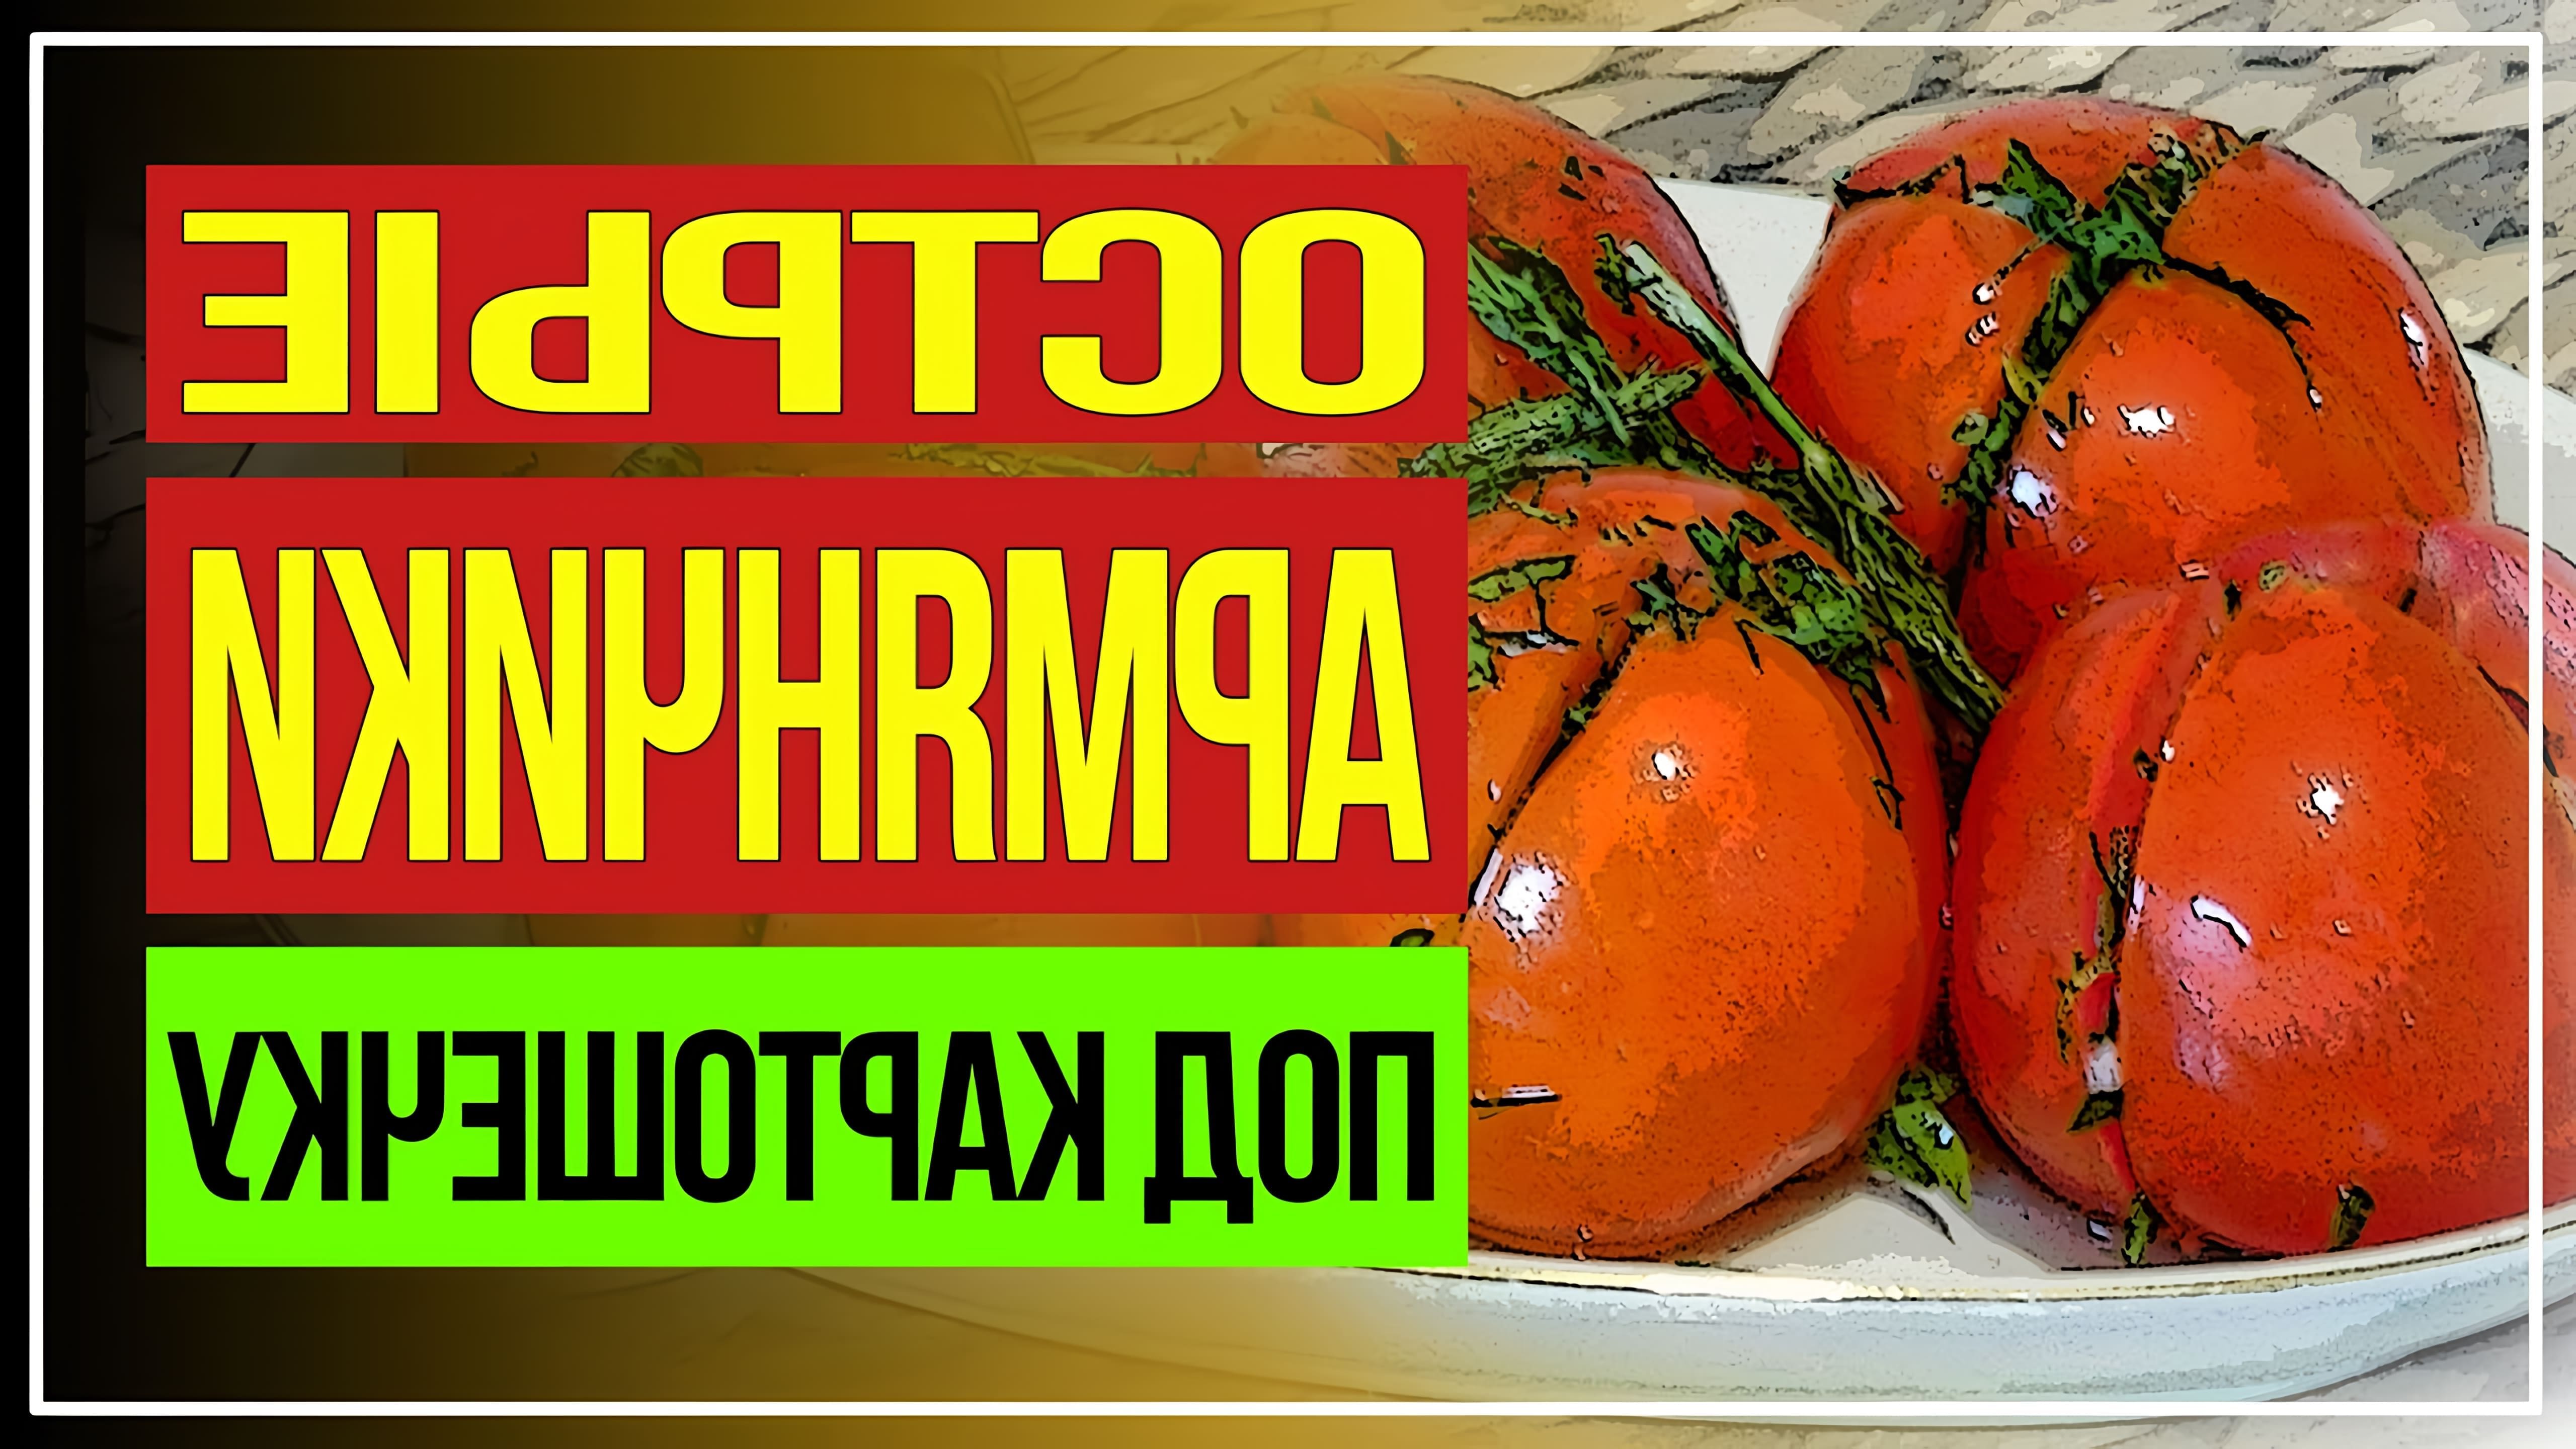 Сегодня у меня «армянчики» или вкусные острые маринованные помидоры, которые готовятся всего лишь сутки. Закуска... 